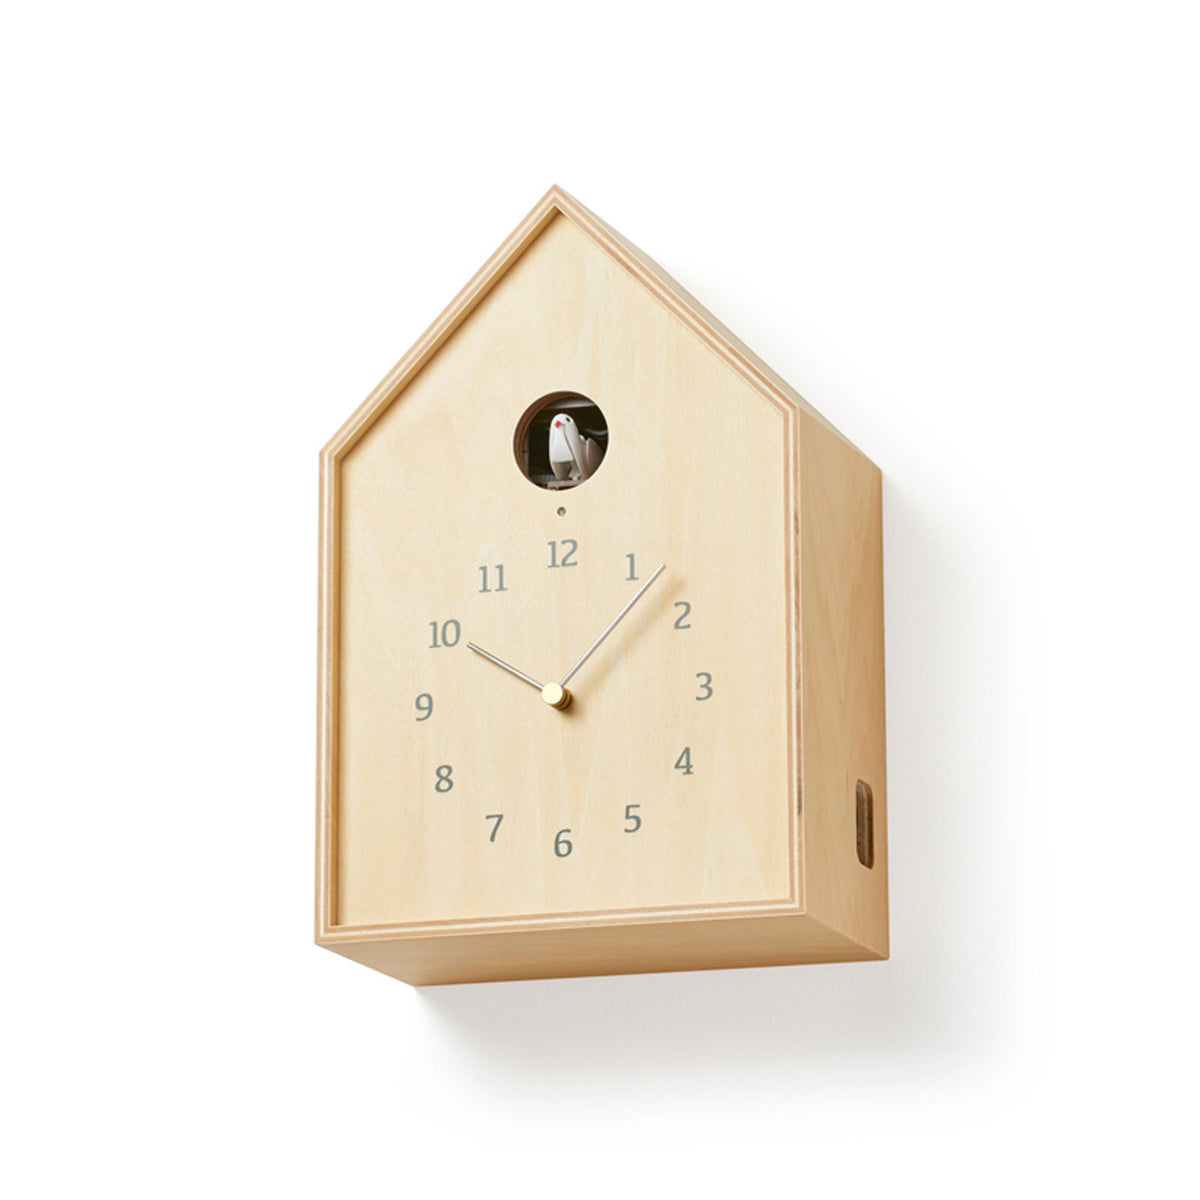 Plywood Birdhouse Cuckoo Clock displayed on a wall.